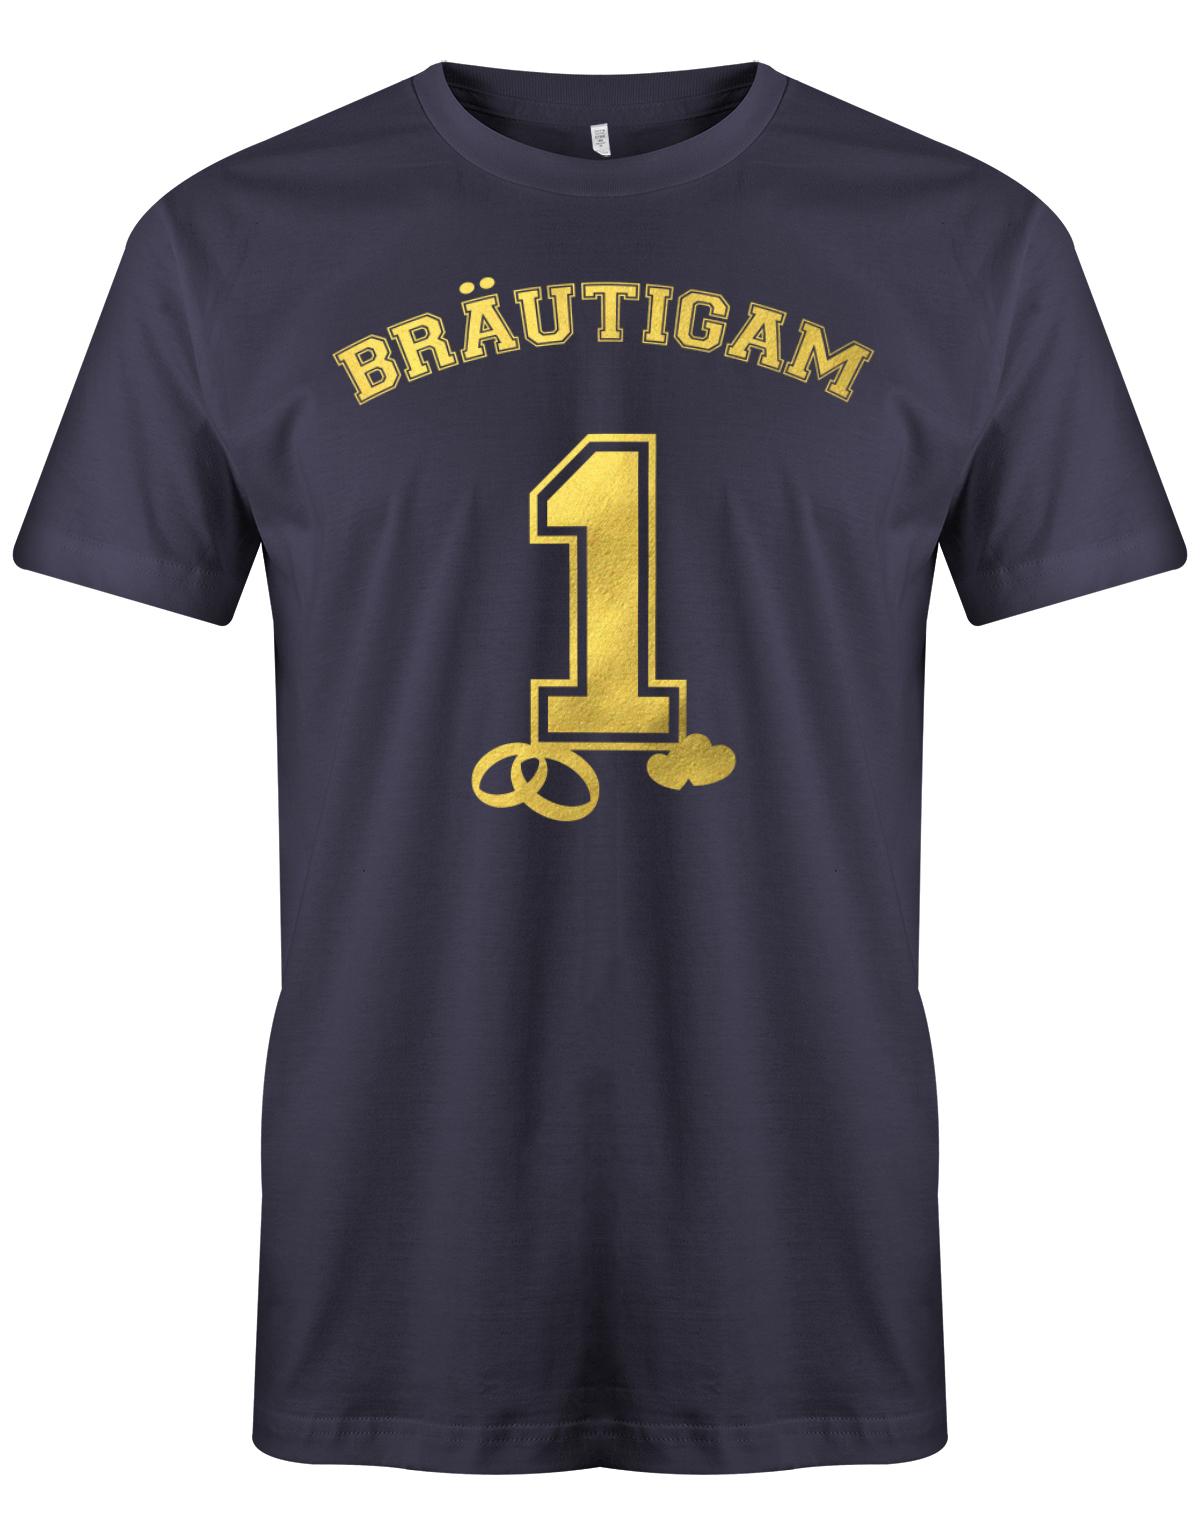 Br-utigam-1-Jga-Shirt-Herren-Navy